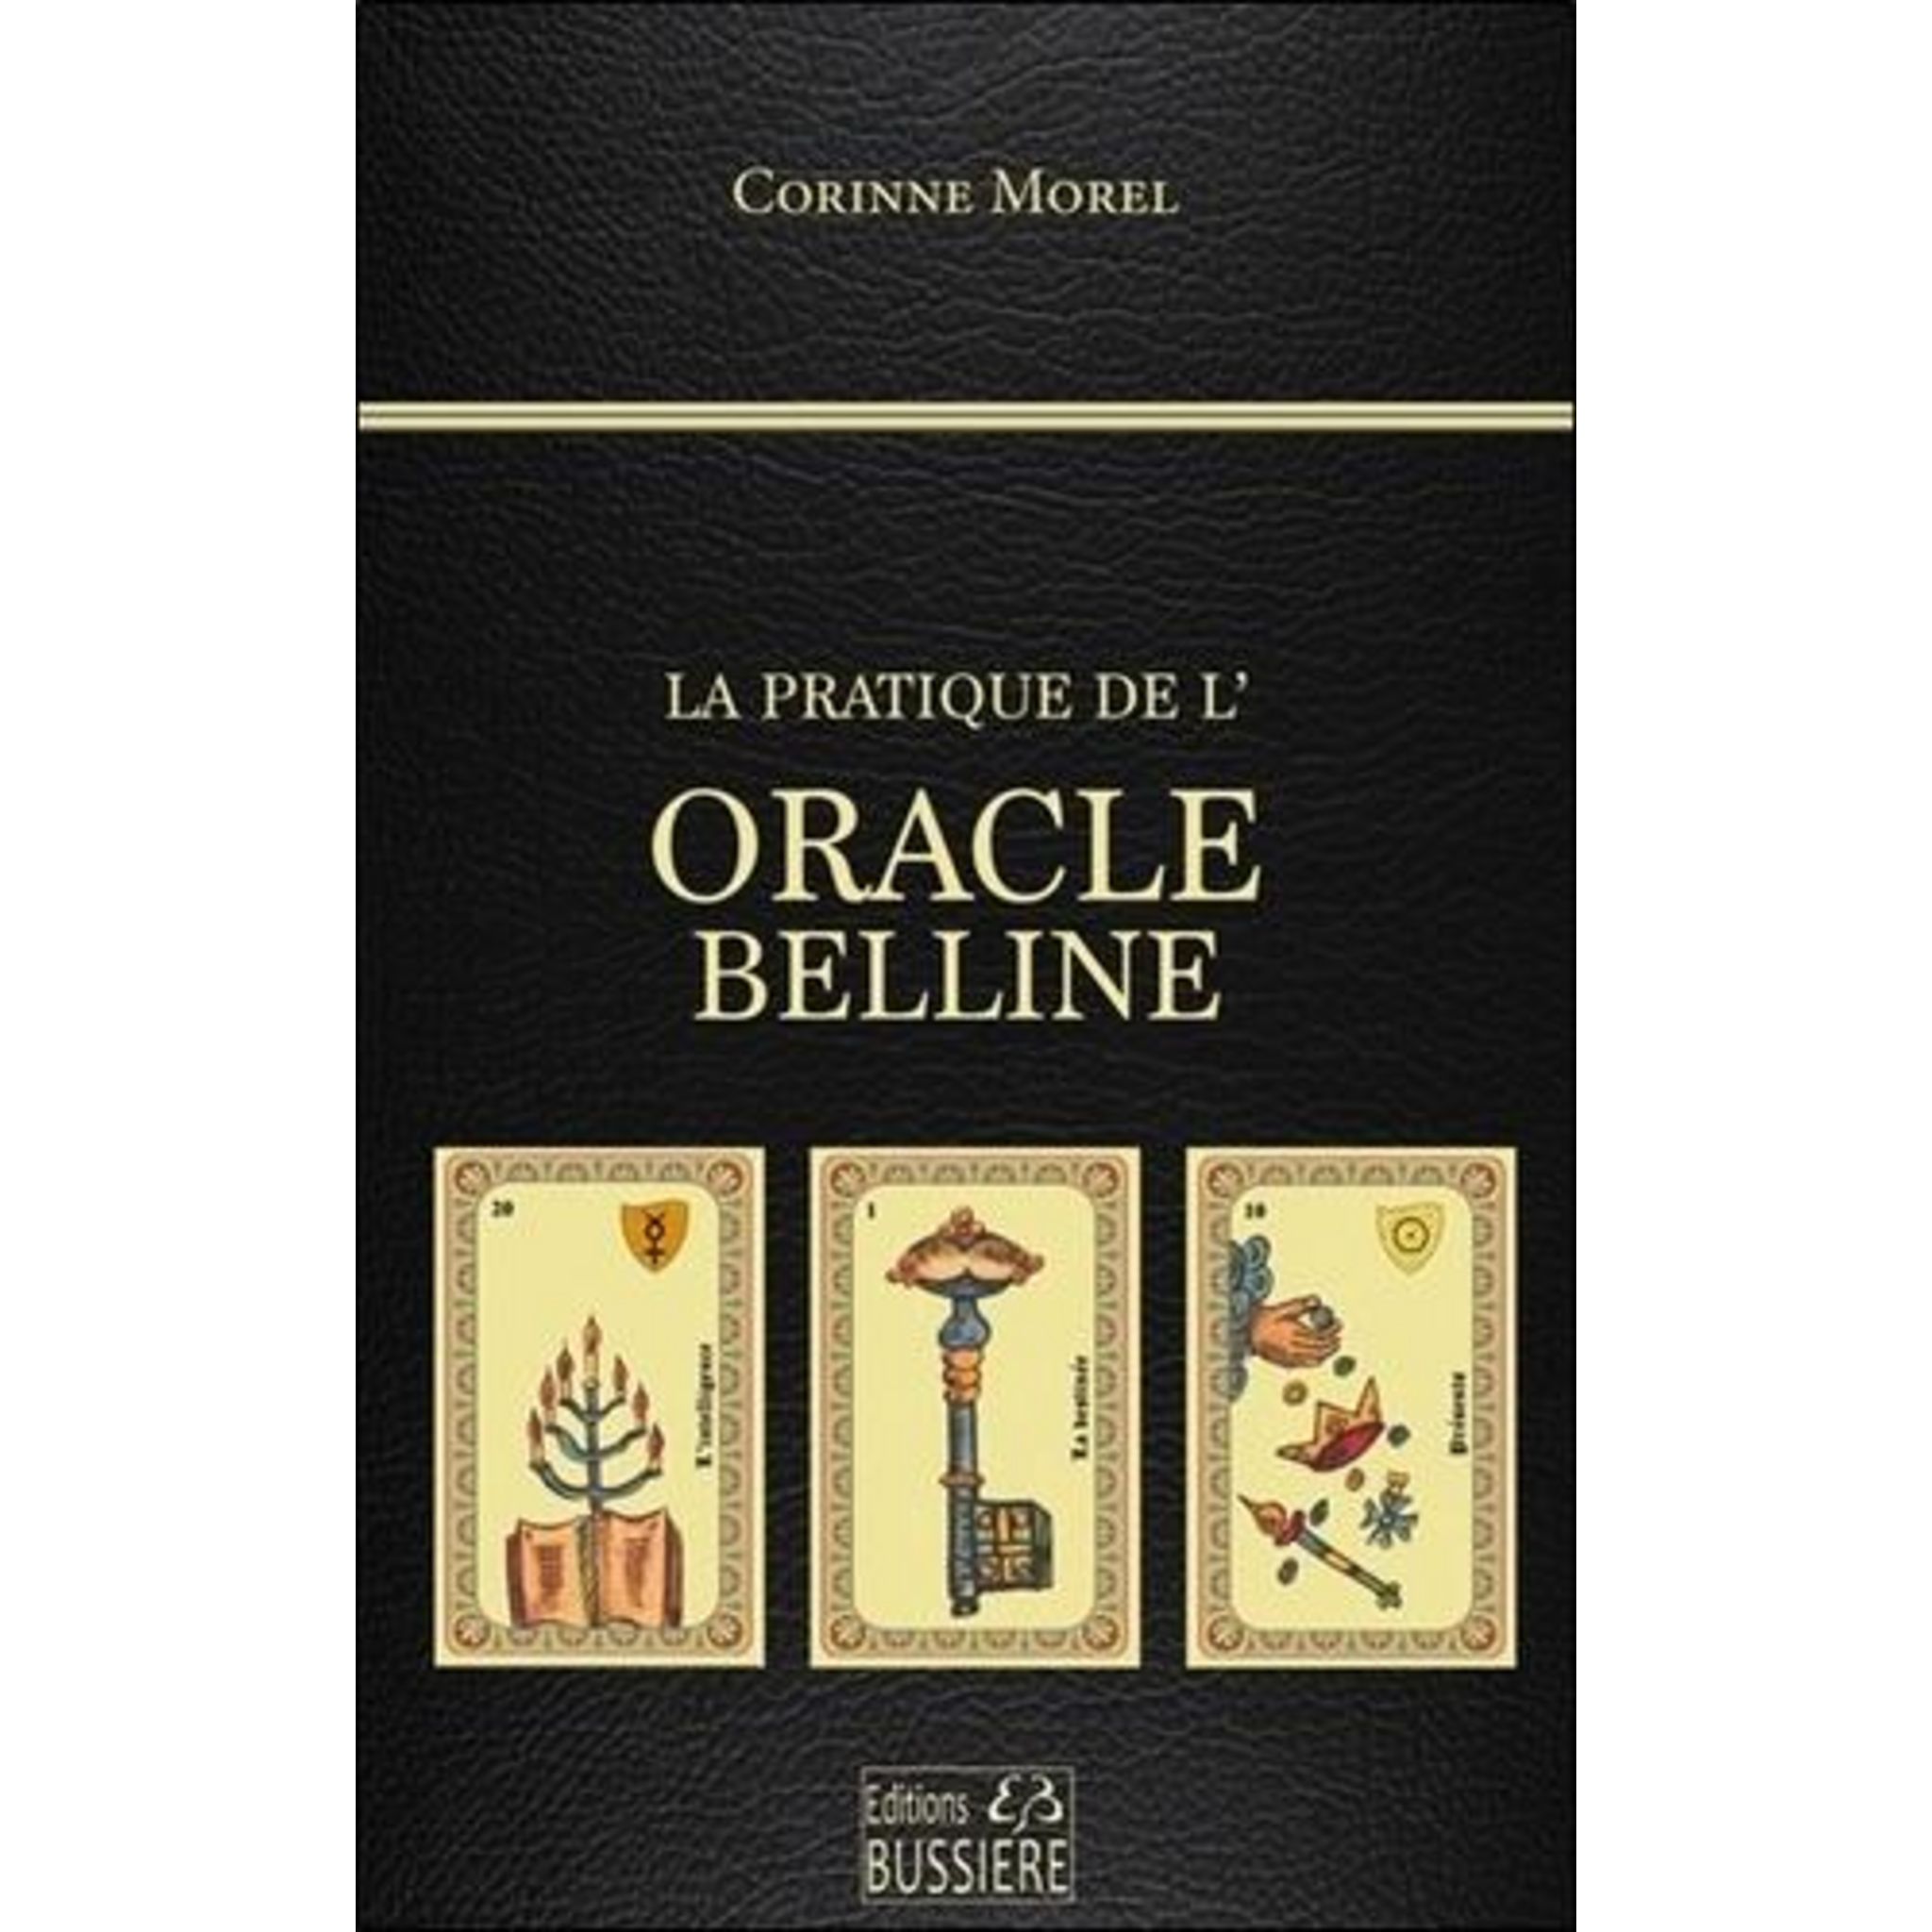 L'Oracle Belline : Combinaisons et Tirages